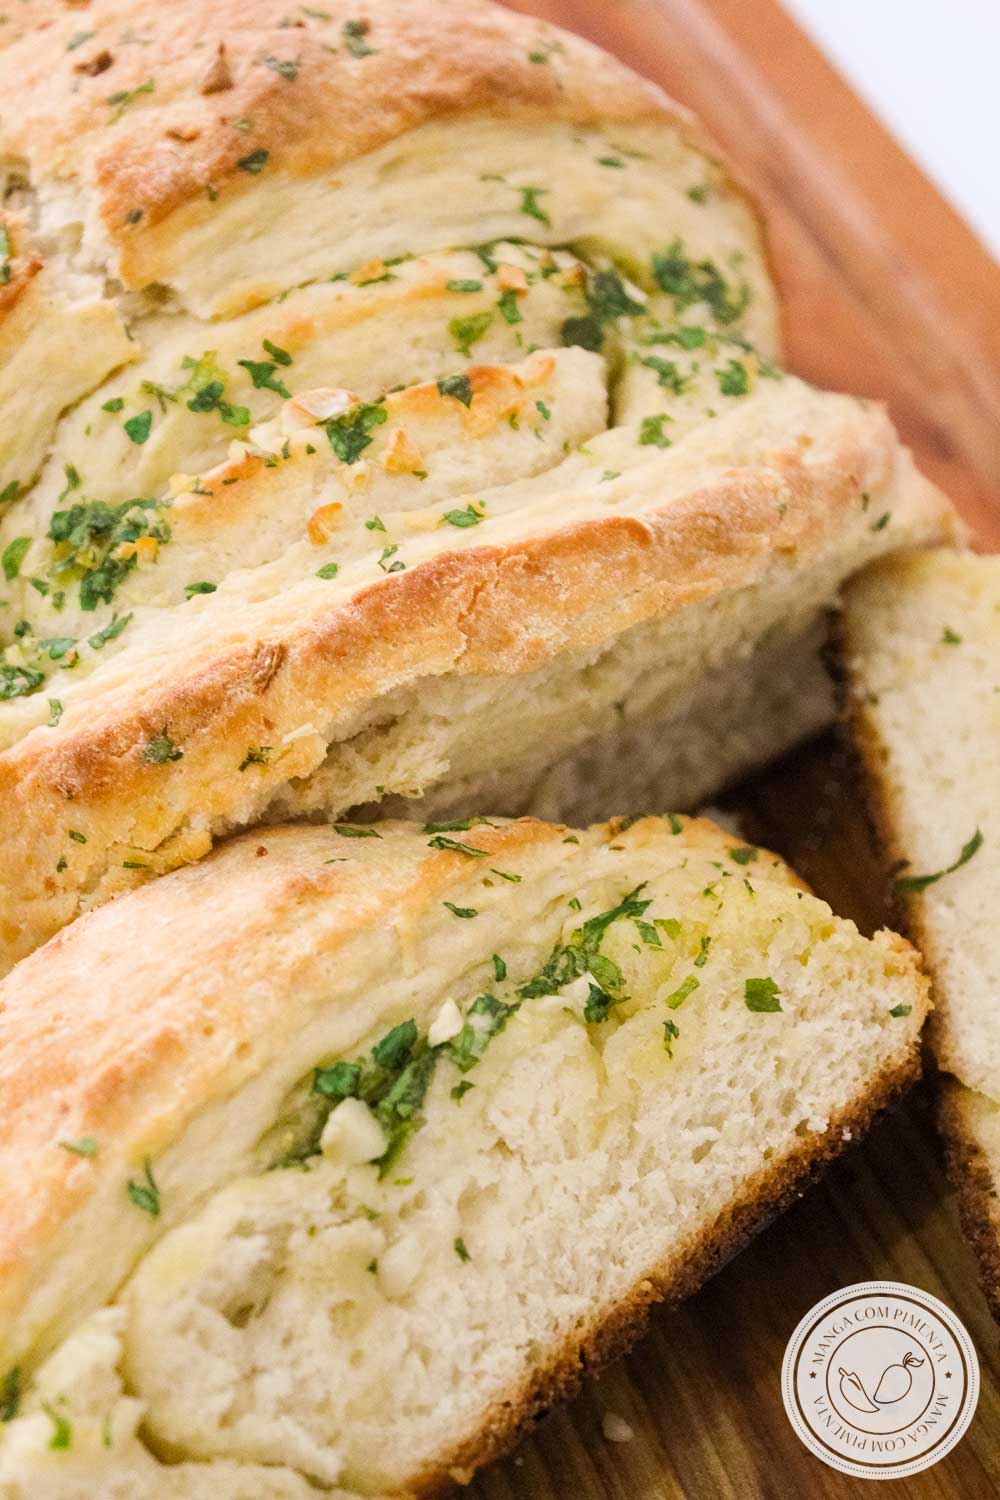 Receita de Pão de Alho e Manteiga Caseiro - prepare para o lanche da tarde ou para acompanhar aquele churrasco delicioso.